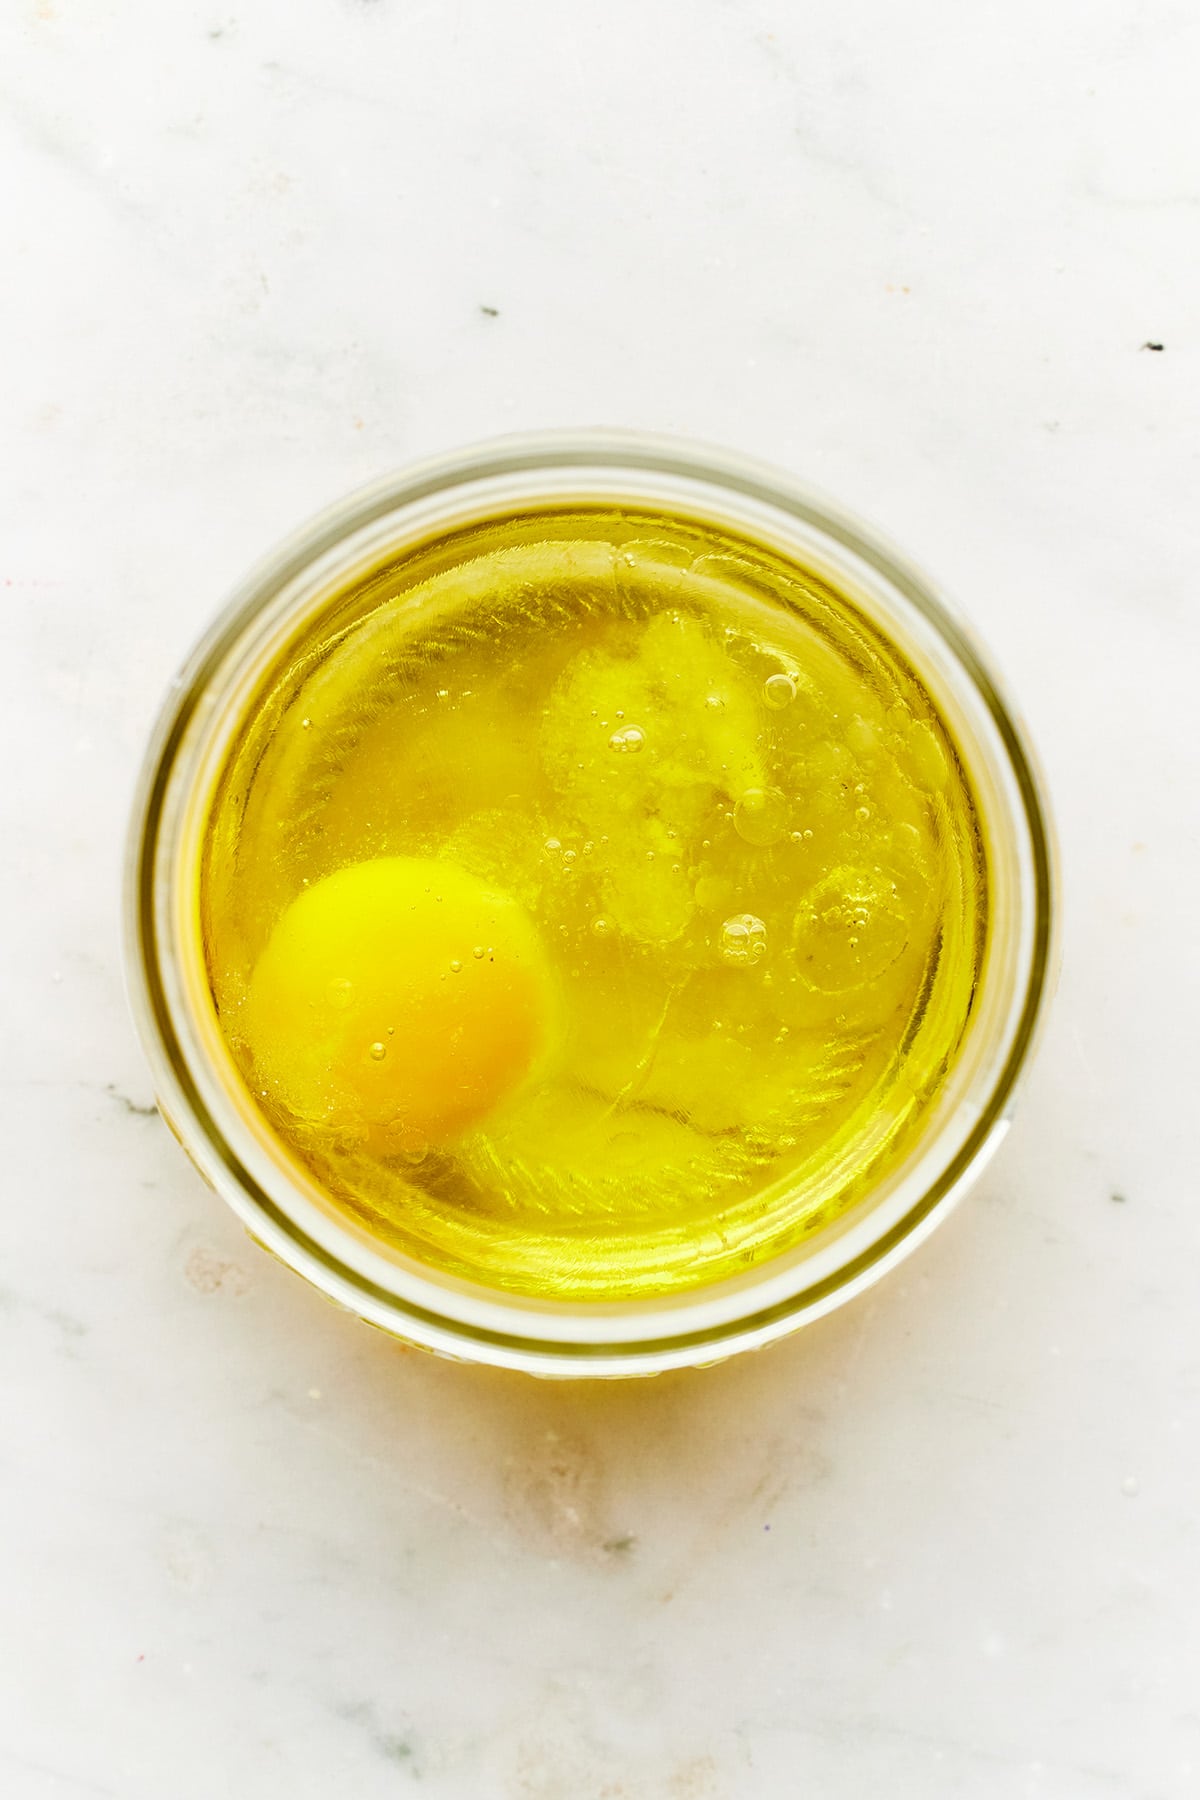 A jar with oil, salt, and an egg inside.